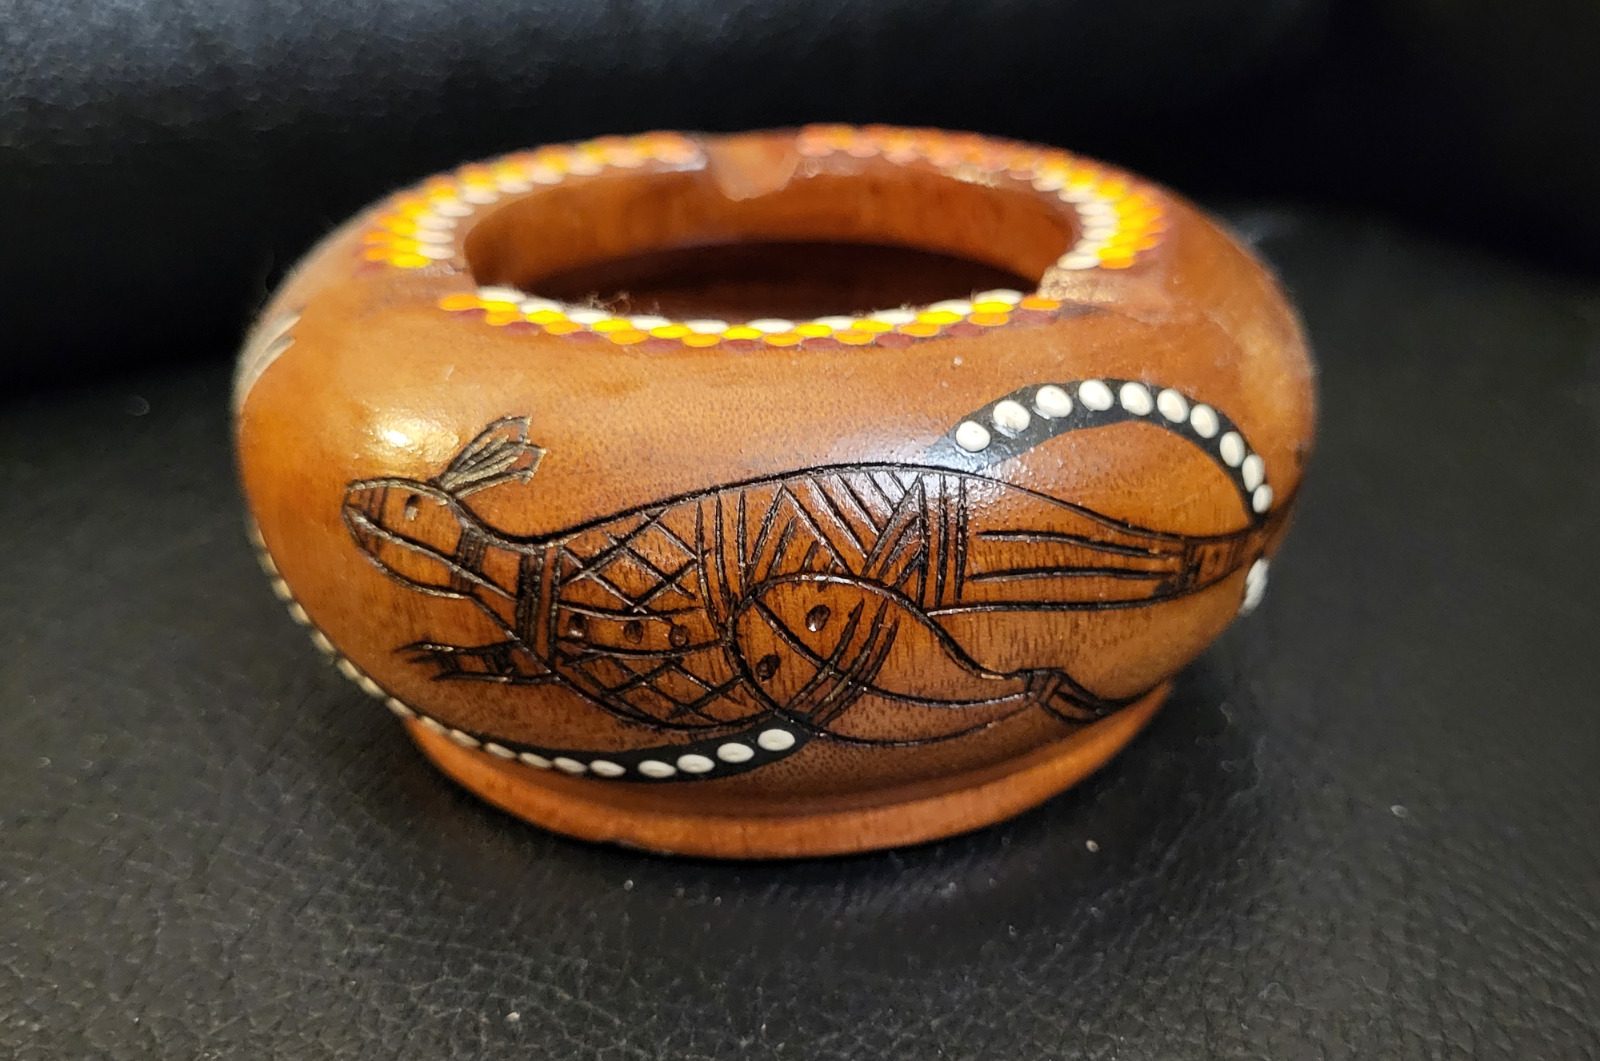 Vintage Australian souvenir wooden ashtray with kangaroo motif